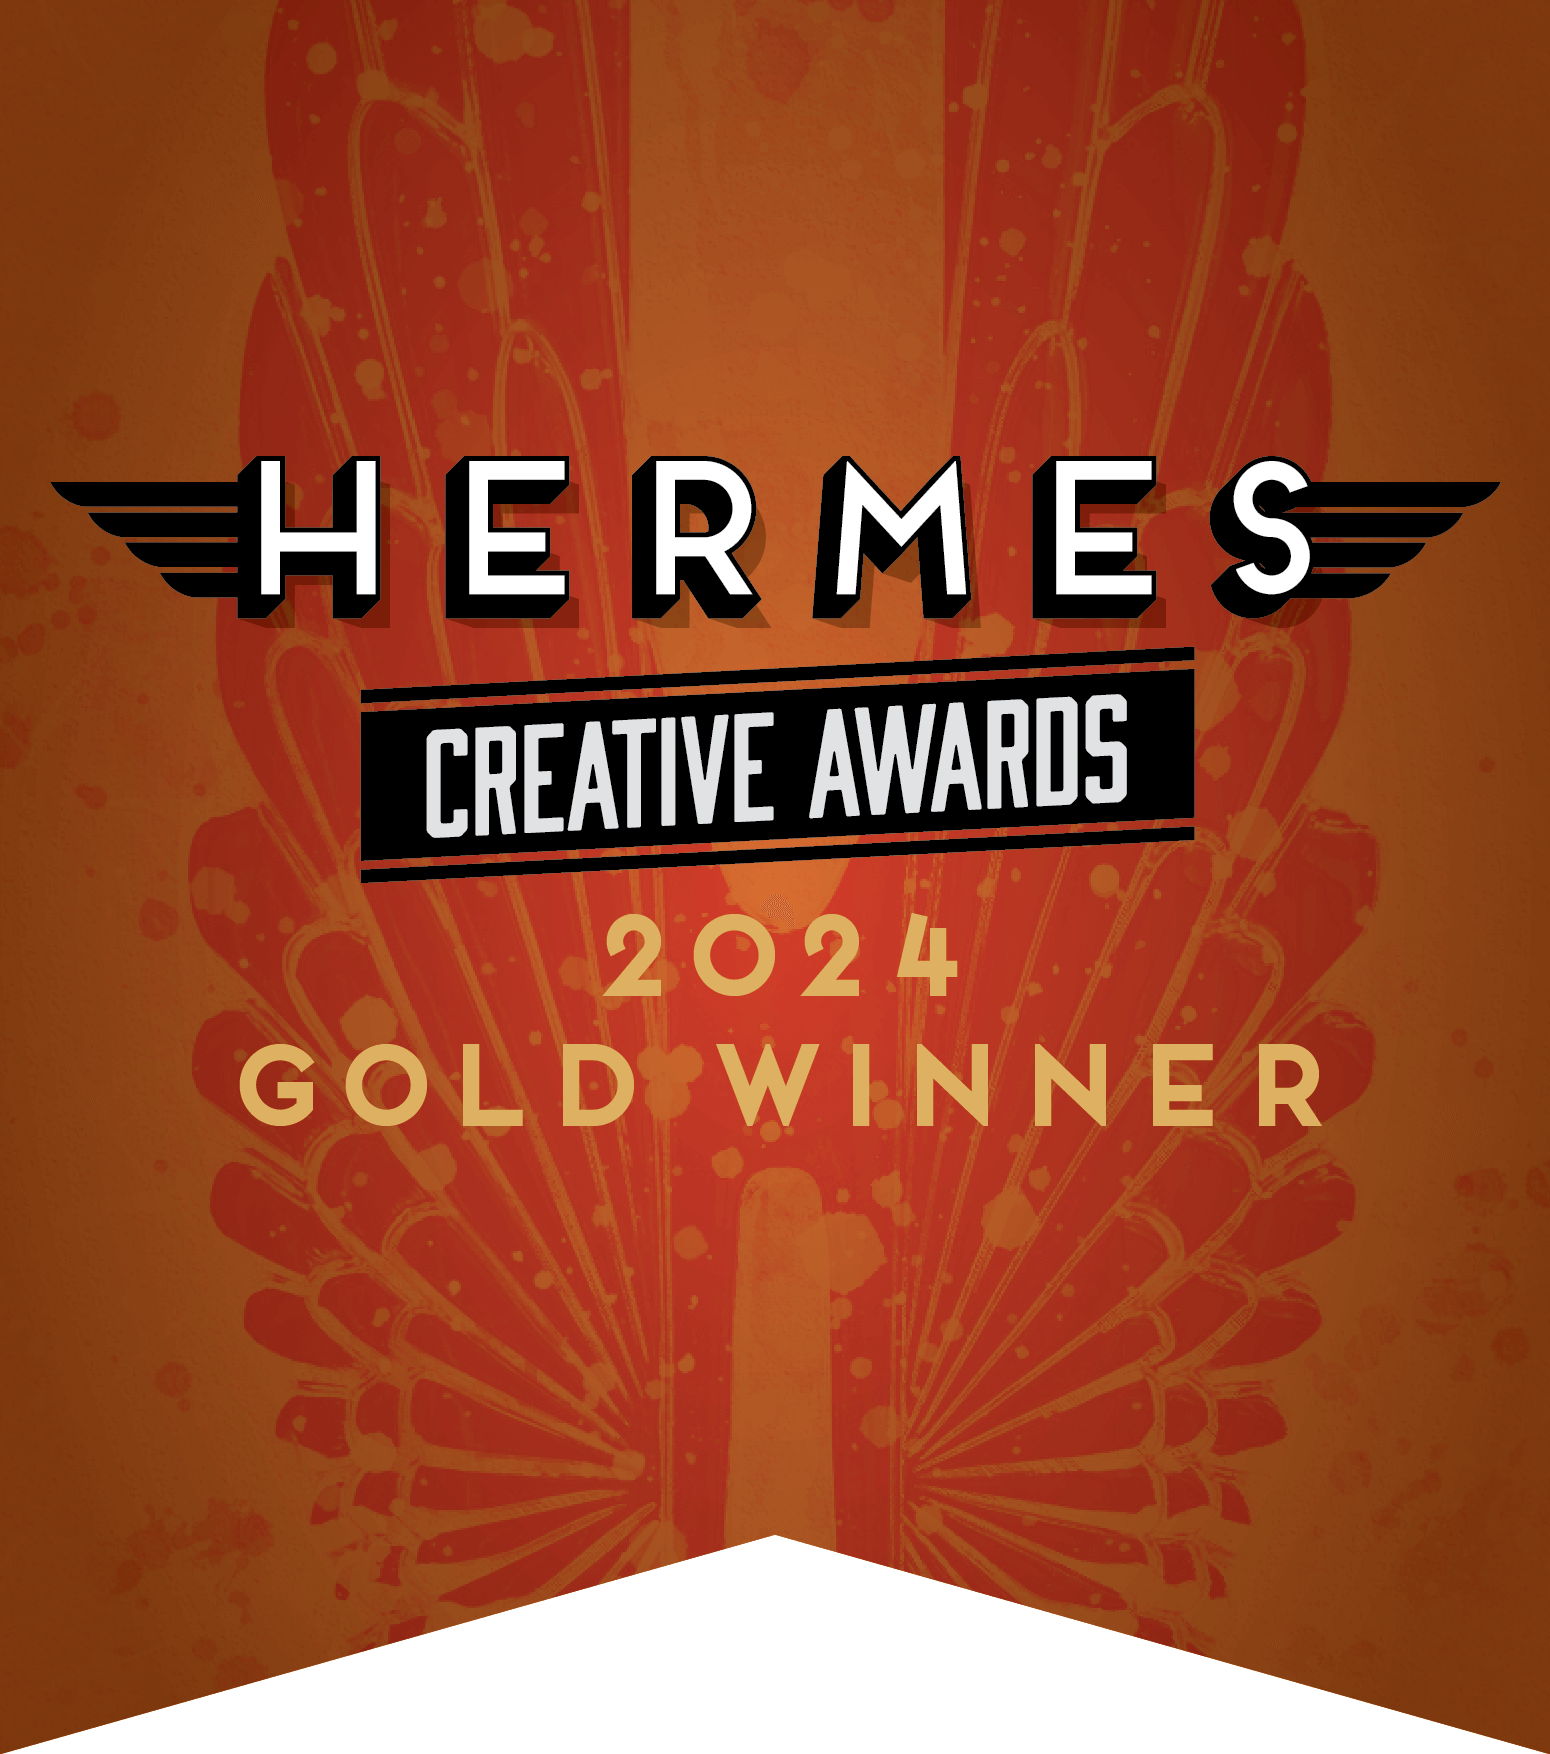 Hermes Creative Awards 2024 Gold Winner